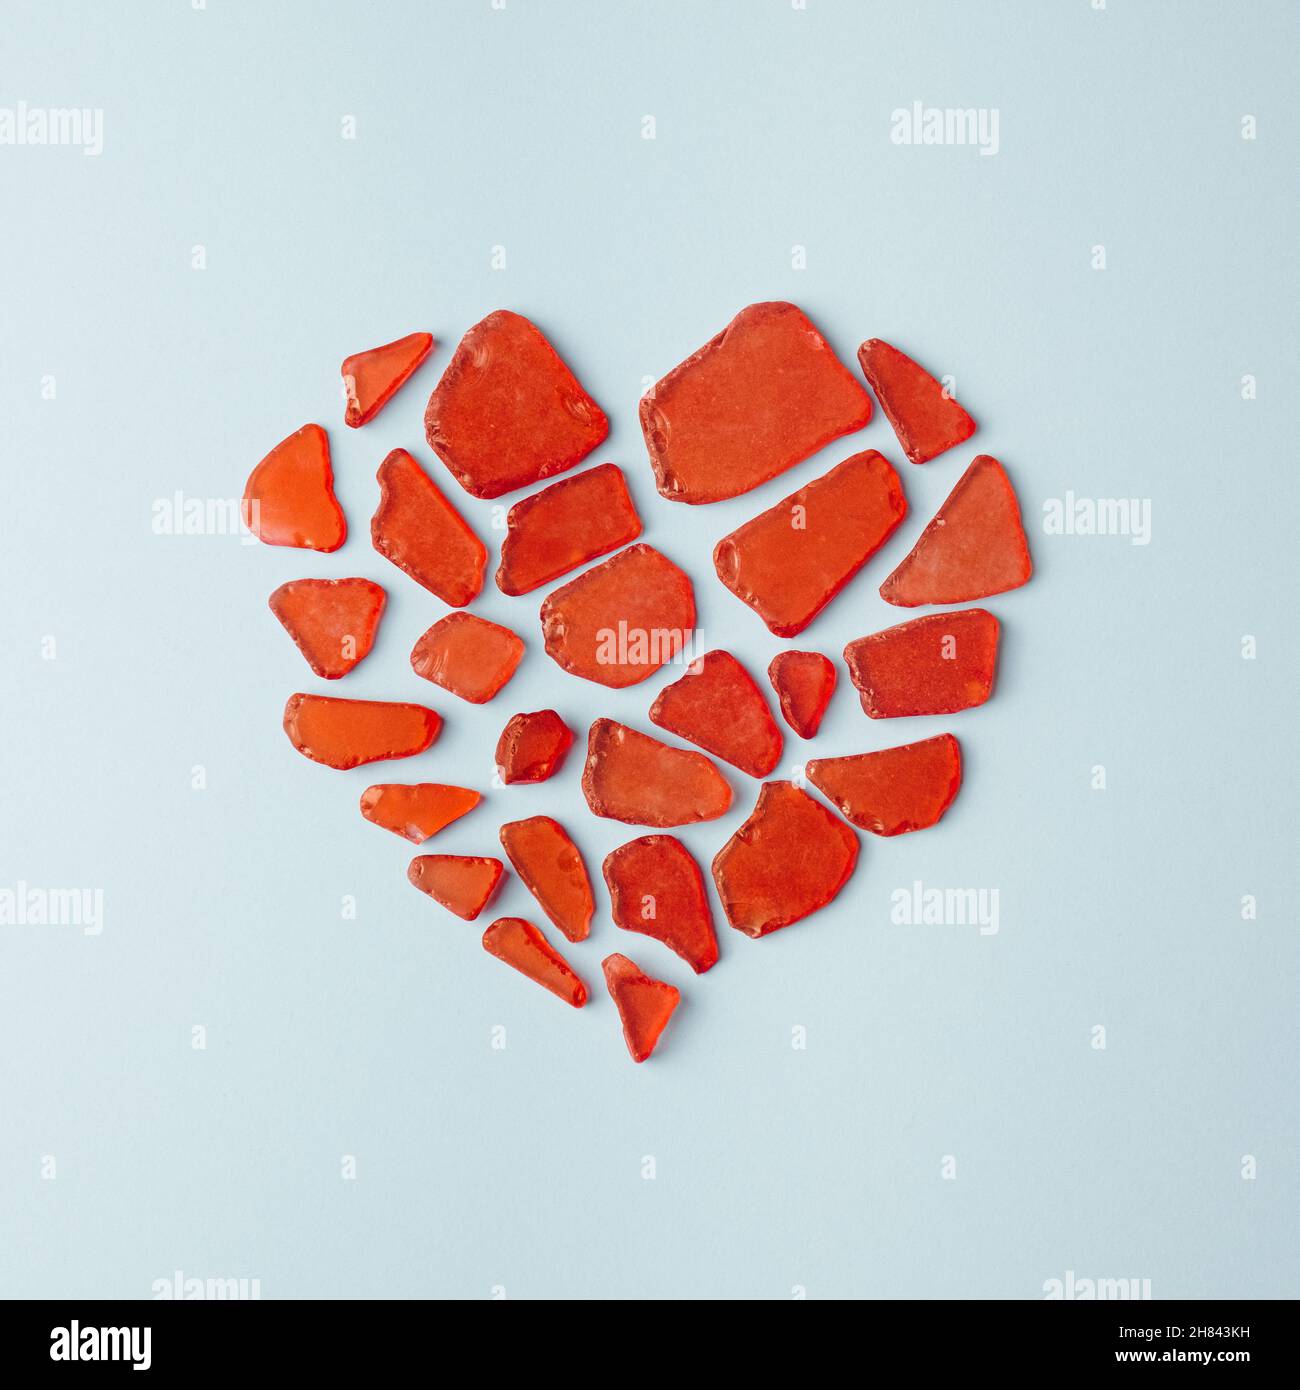 Zerbrochene Glasstücke bilden ein rotes Herz auf einem pastellblauen Hintergrund. Minimales Konzept für Herzschmerz Stockfoto